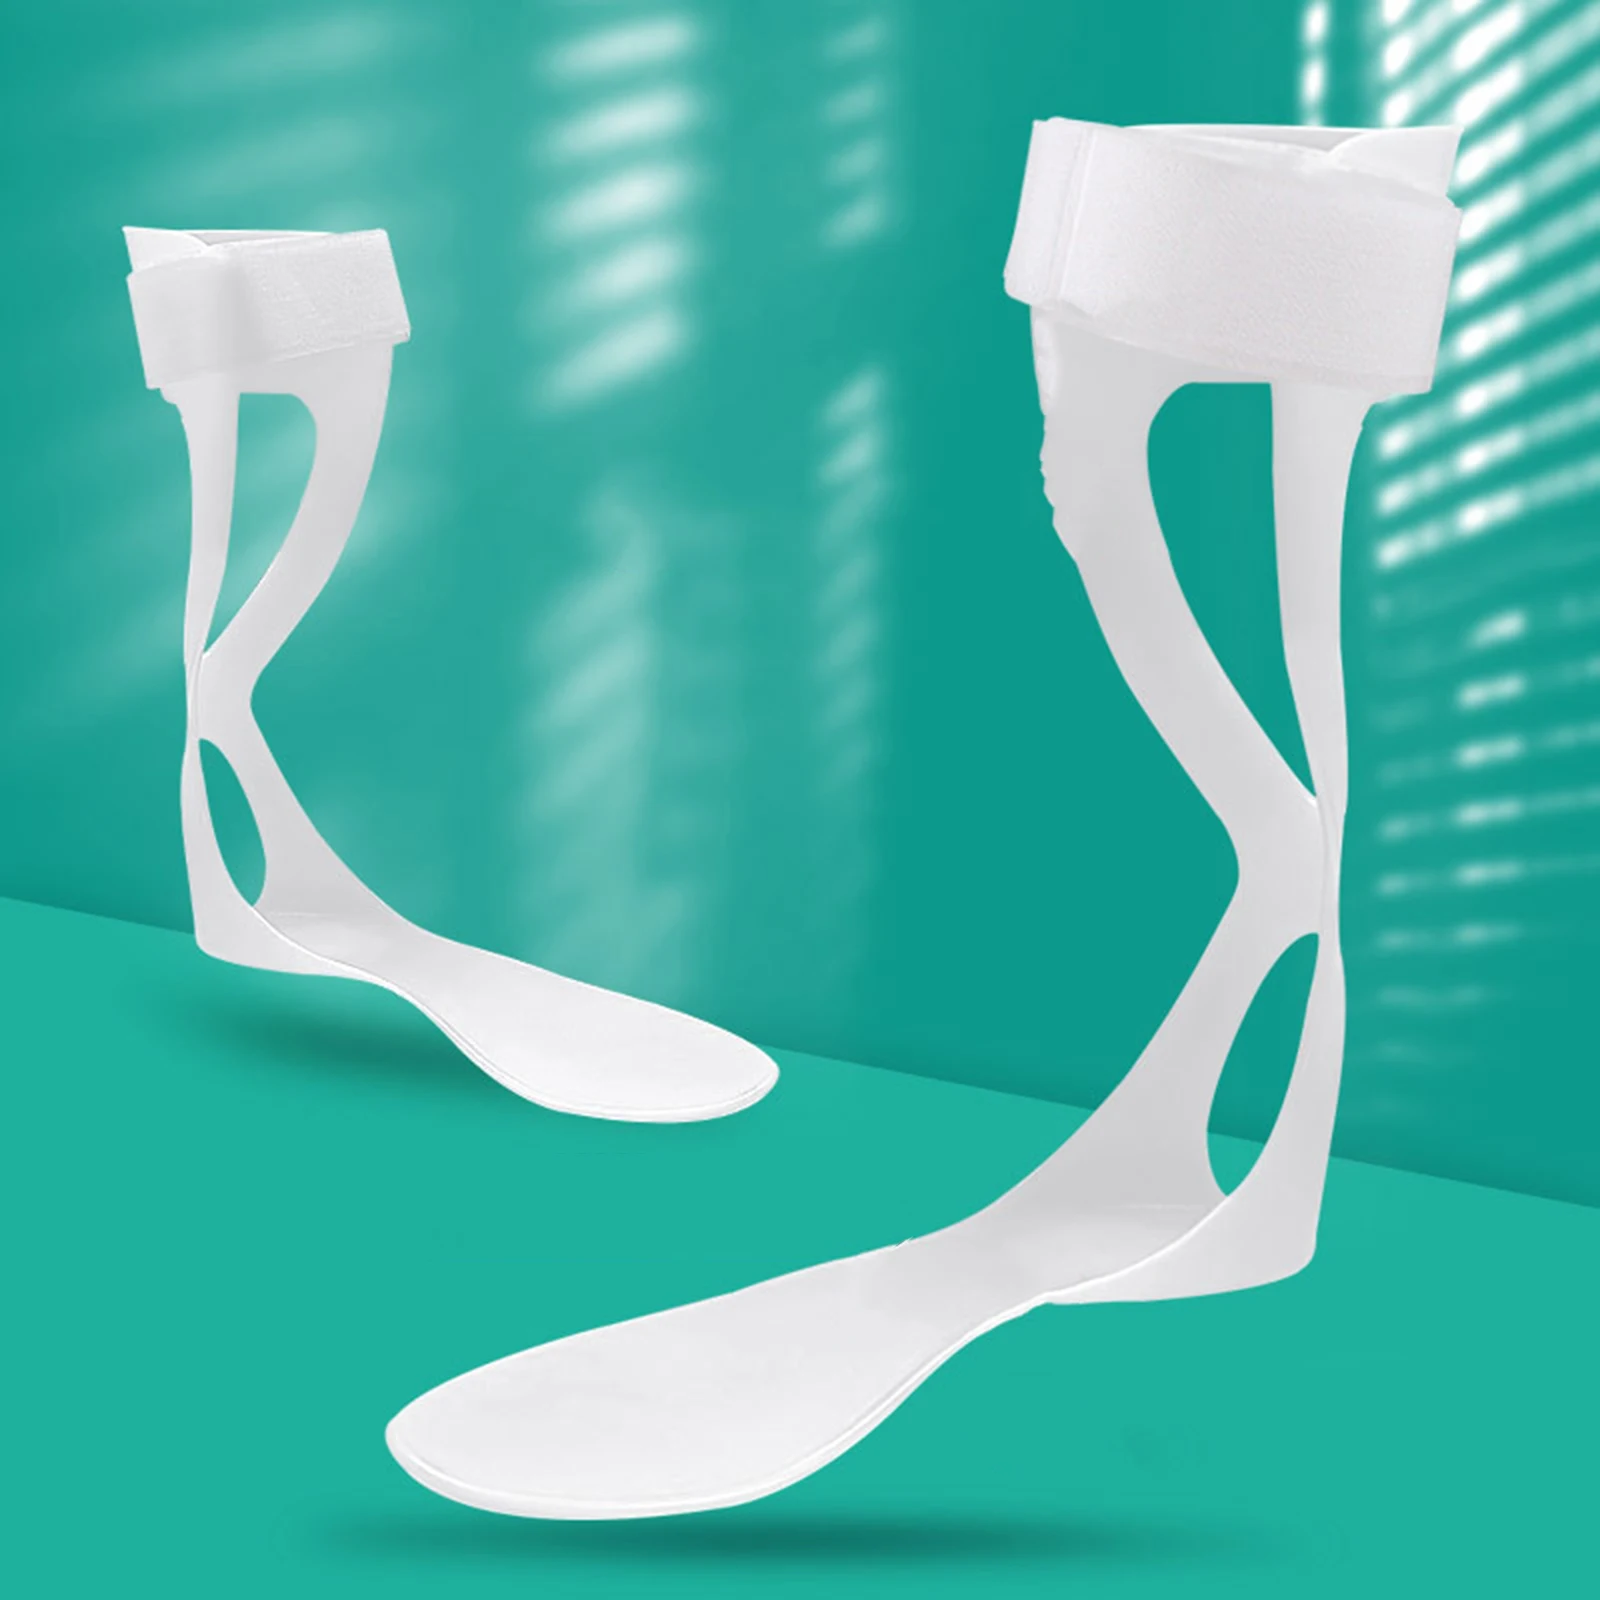 Ankelfot ortos drop fotstabilisator ankel stöd rätare fot droppe stag fot droppe ortos för vuxna stroke sen